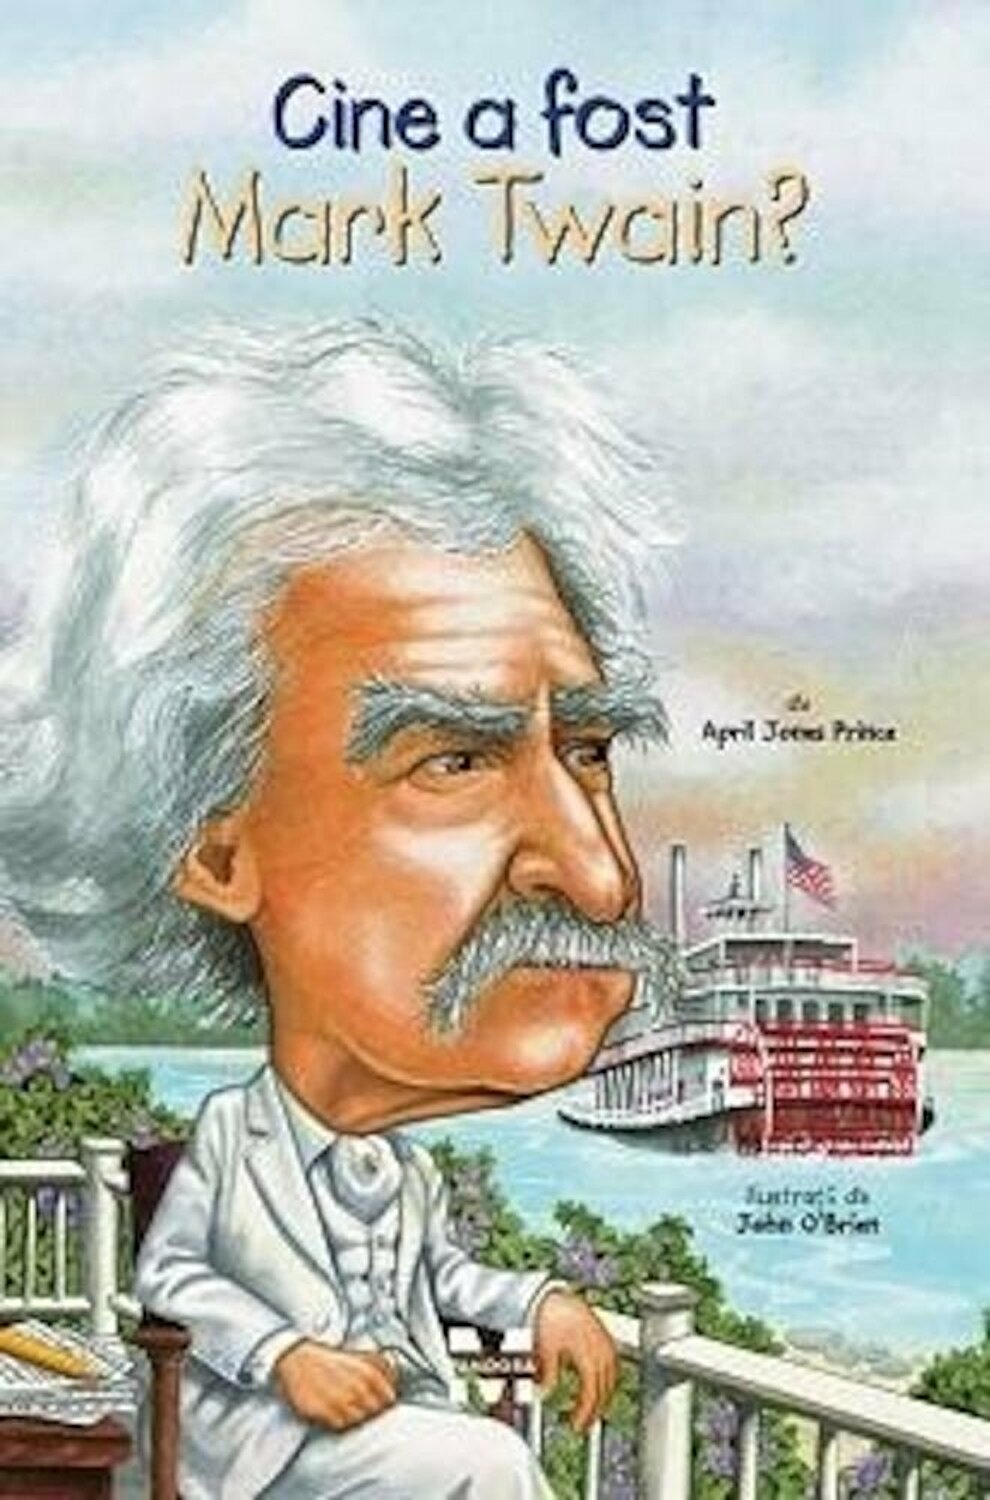 Cine a fost Mark Twain? | April Jones Prince carturesti.ro Biografii, memorii, jurnale